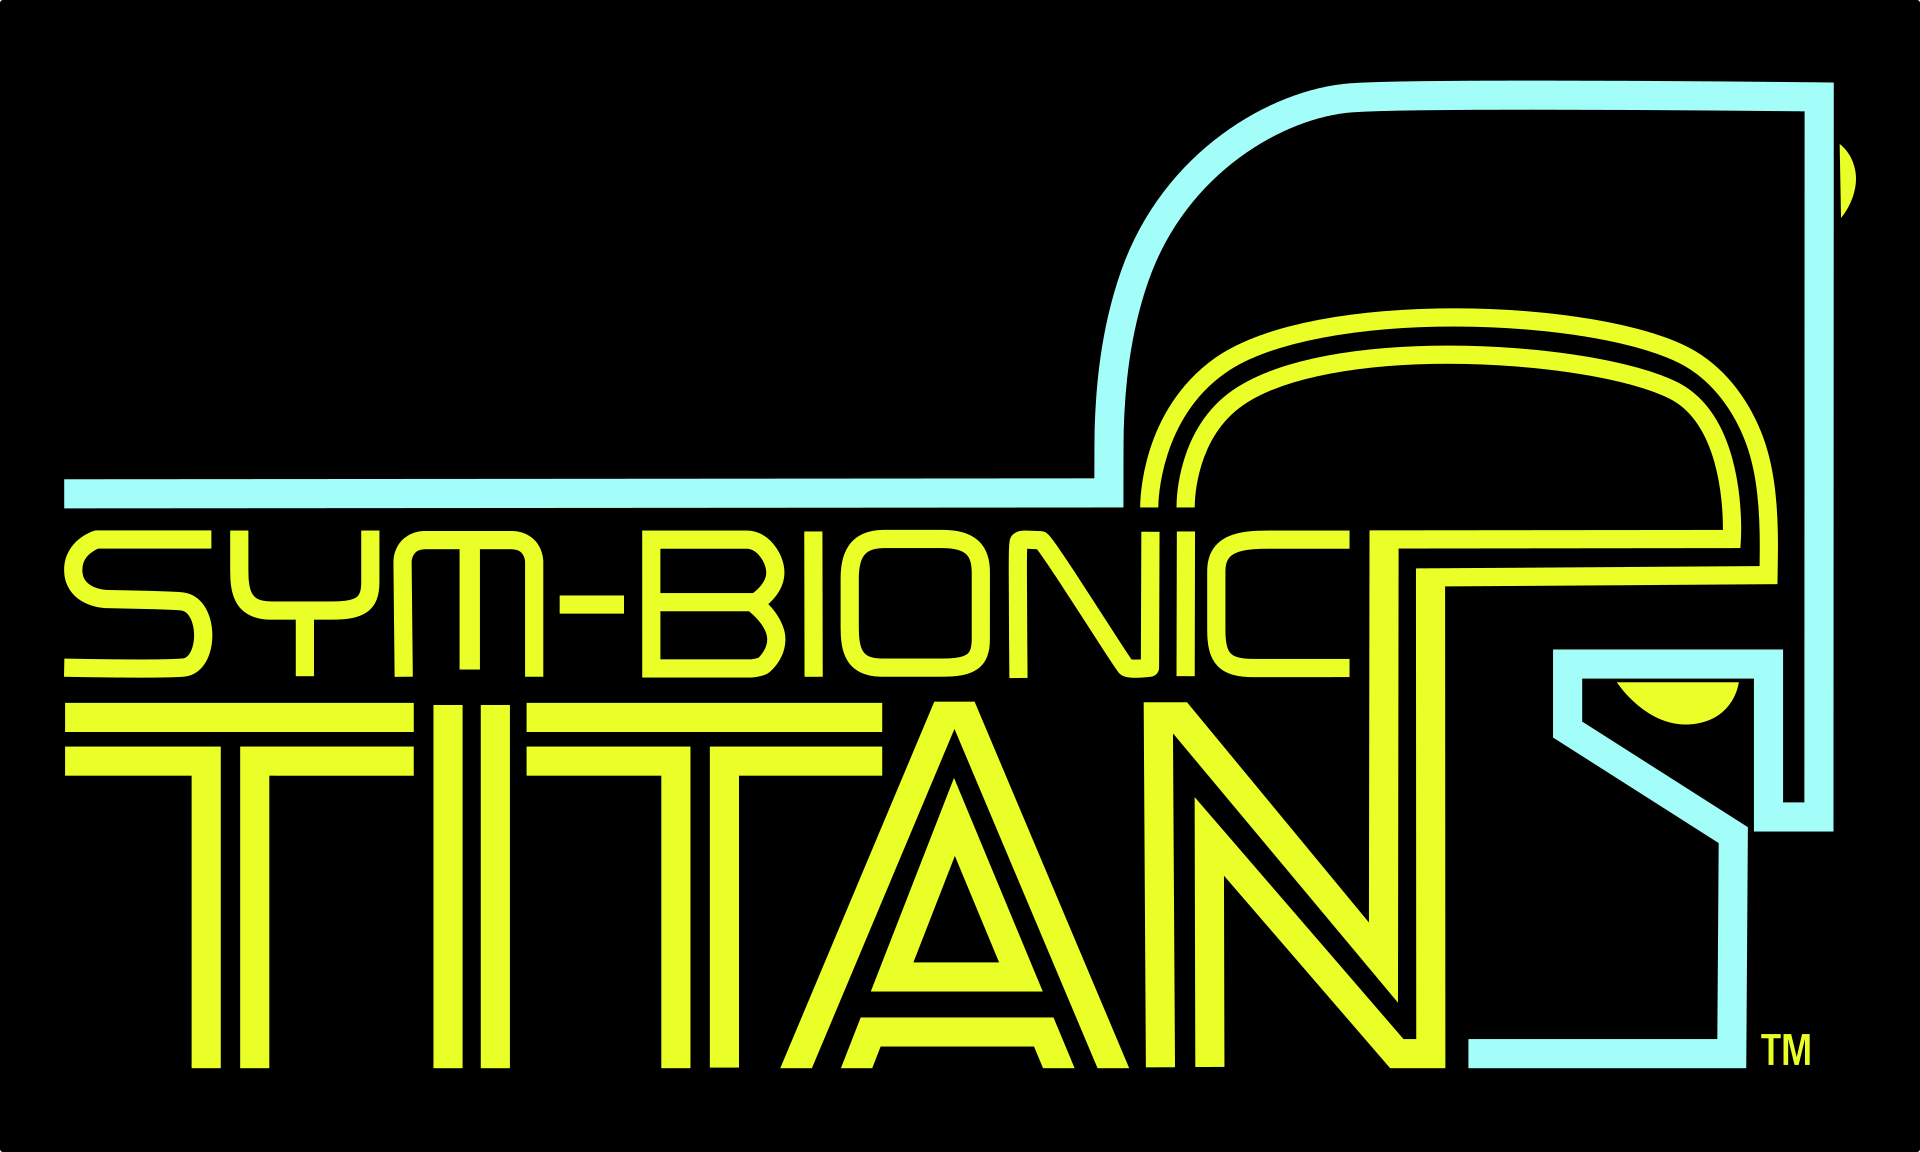 Sym-bionic titan logo.png